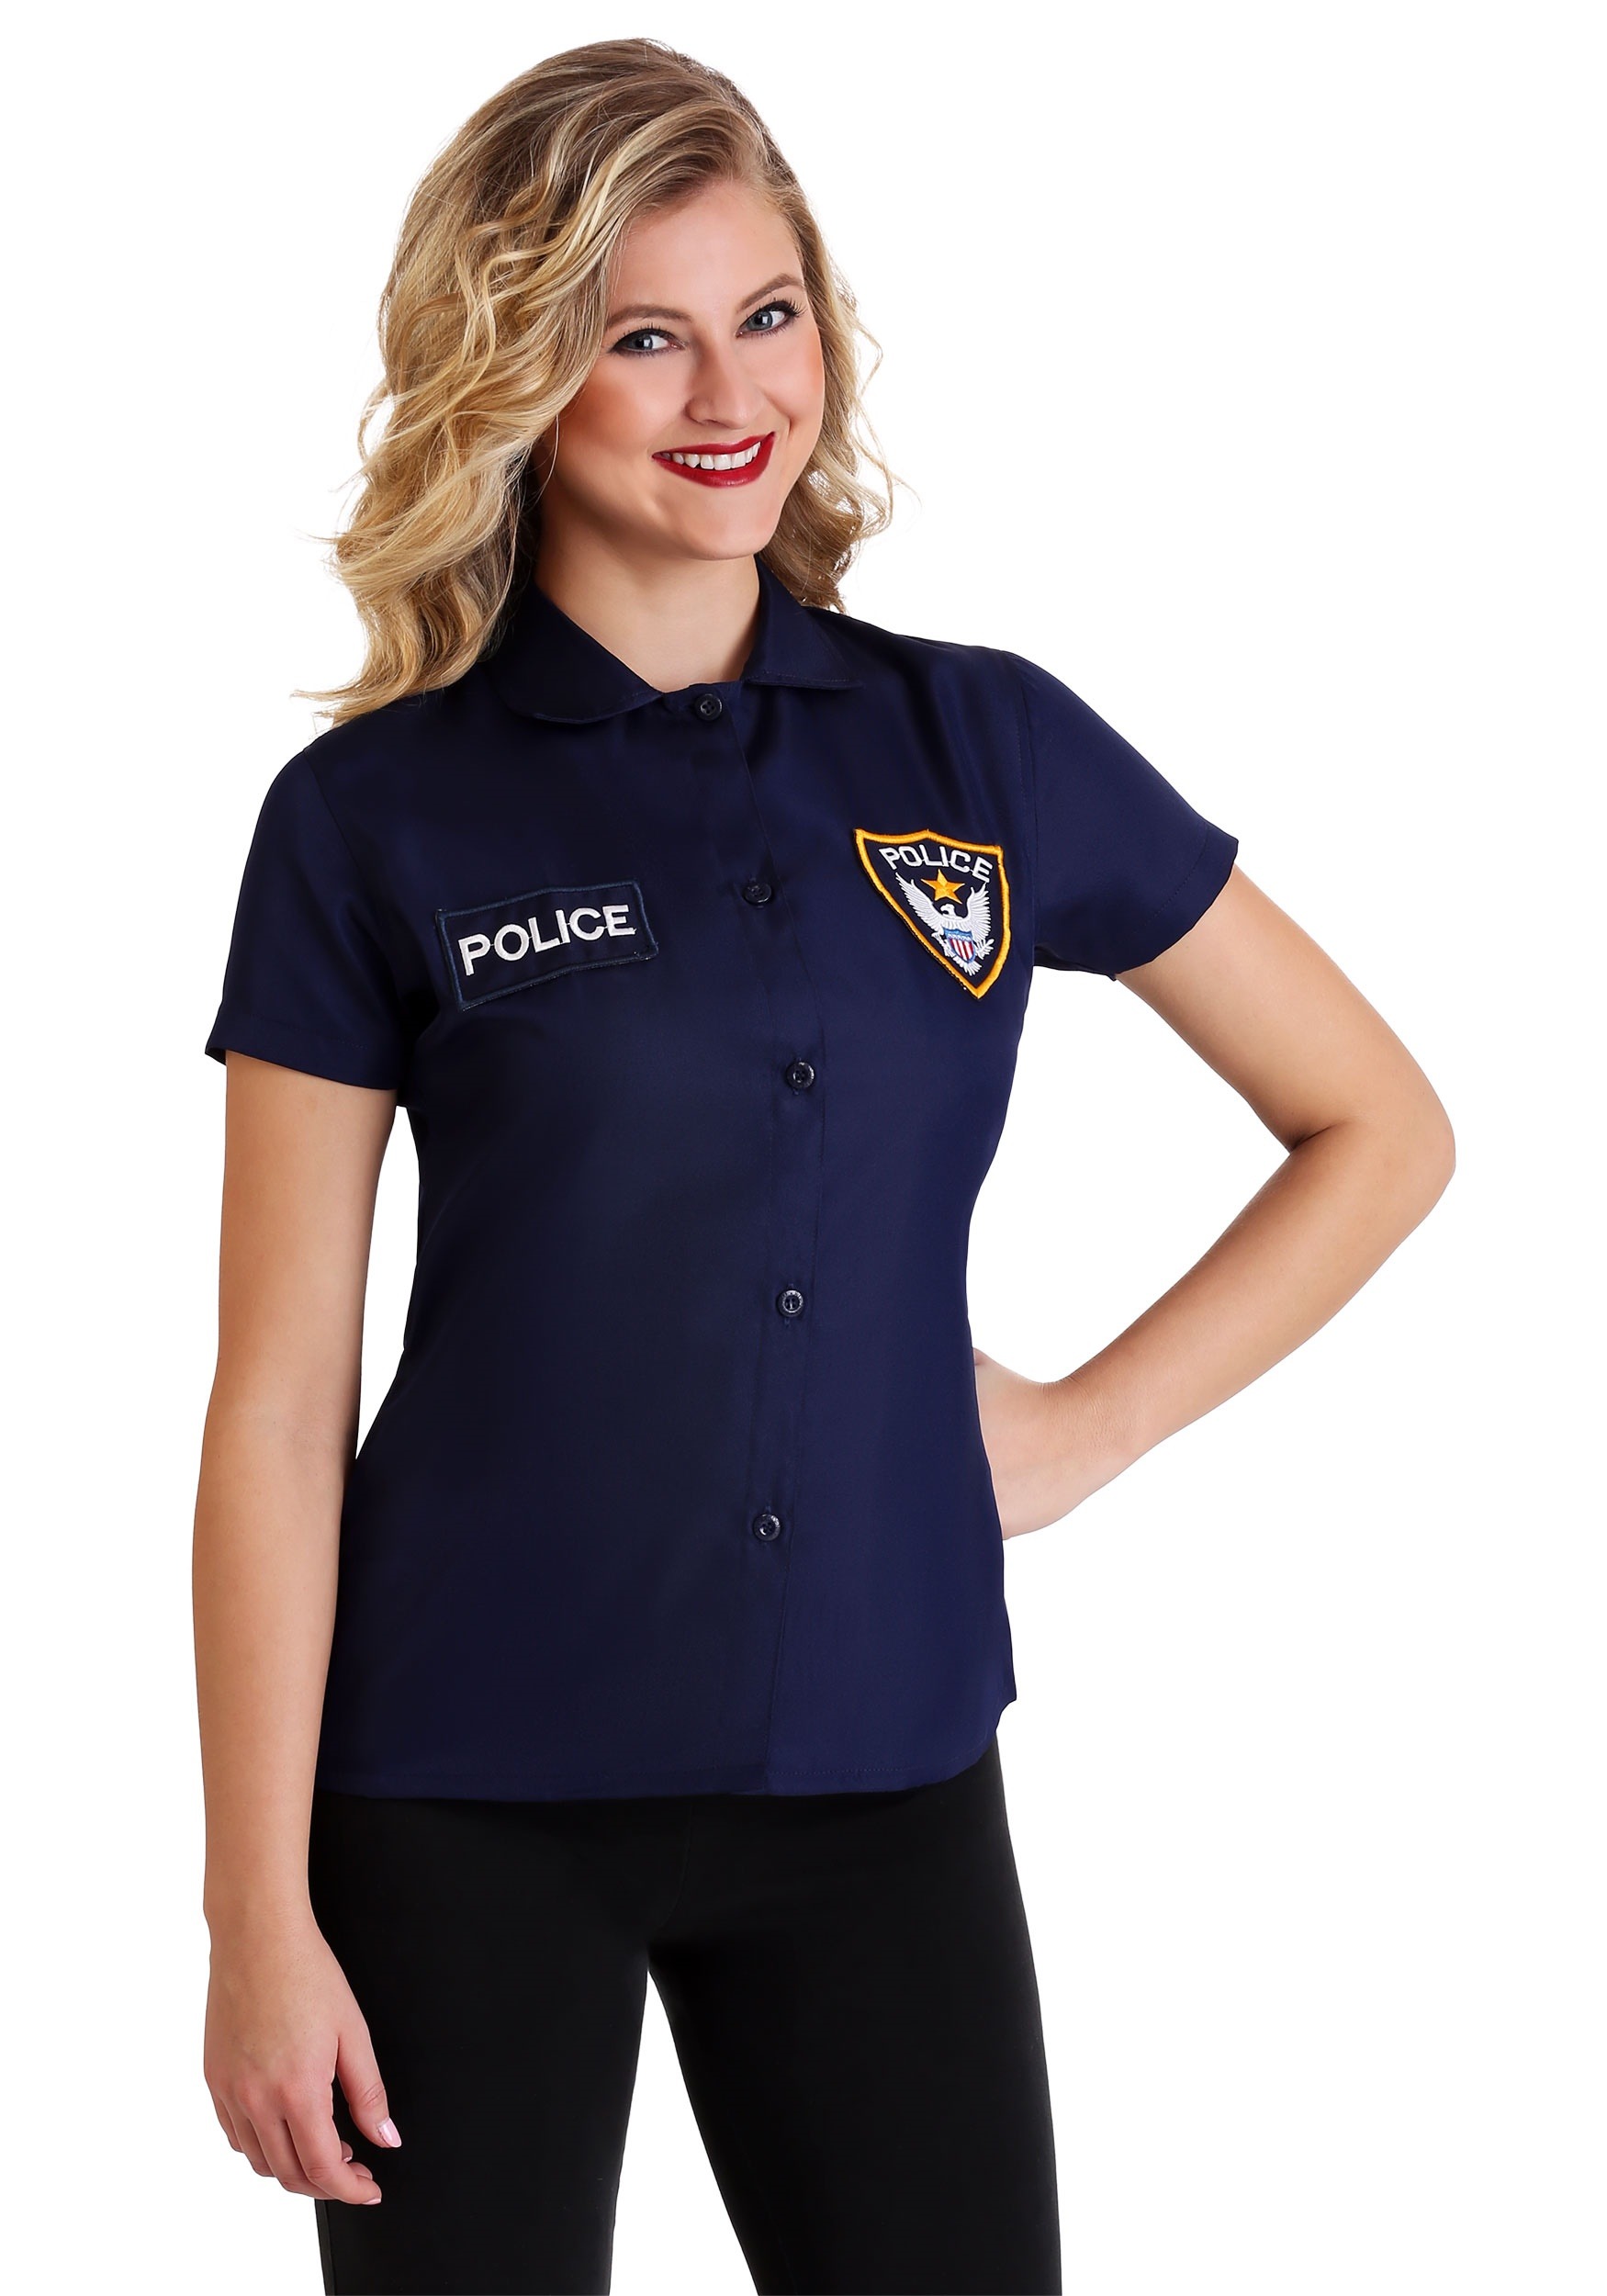 Plus Size Women's Police Shirt Fancy Dress Costume , Adult Fancy Dress Costume T-Shirts